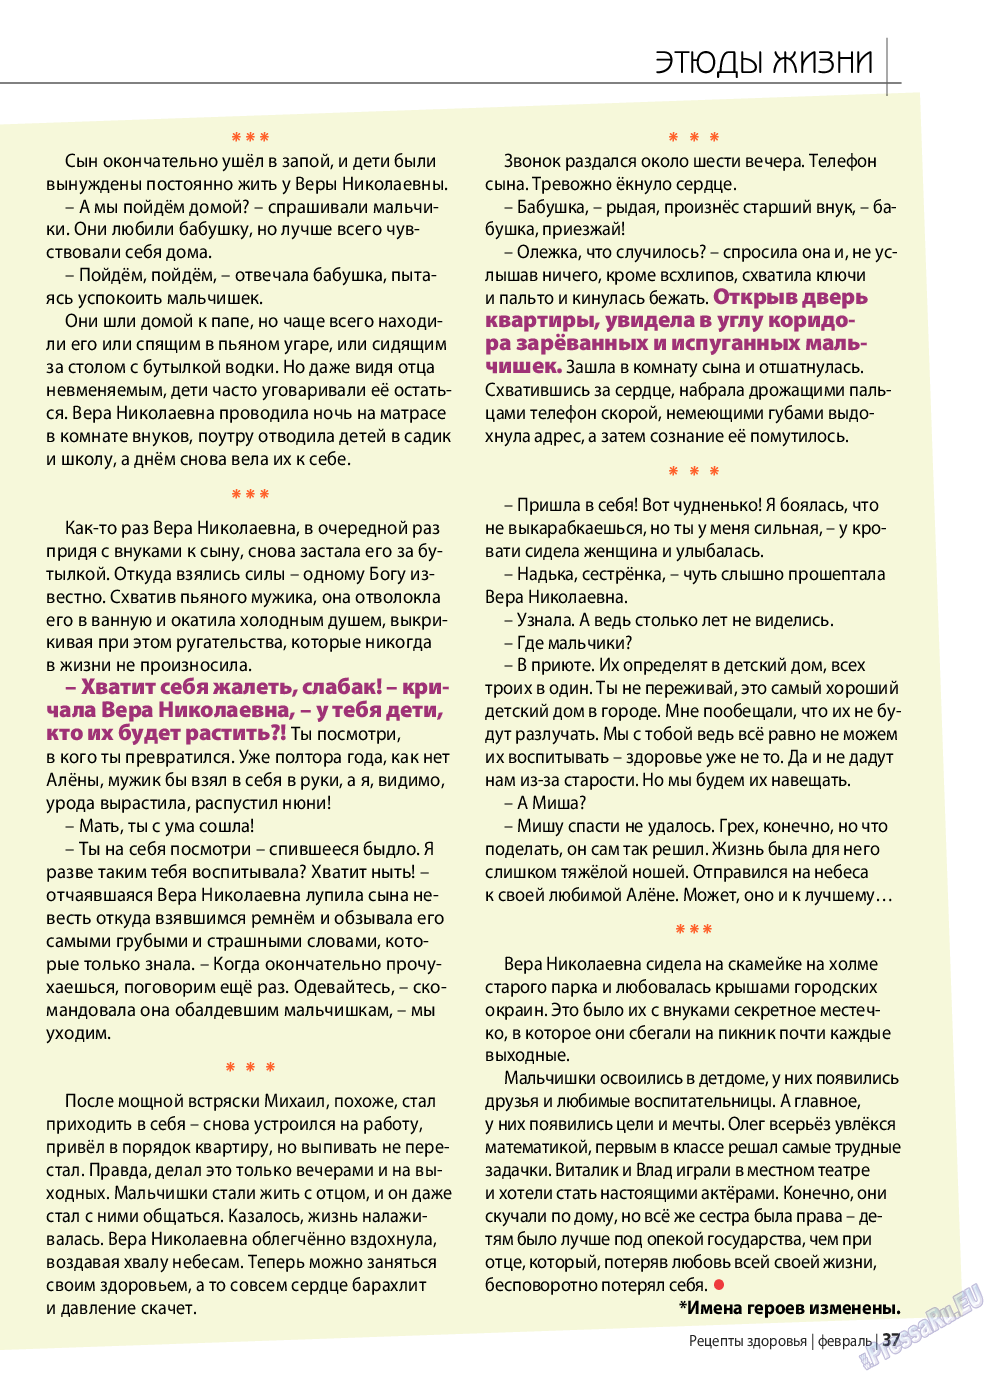 Рецепты здоровья, журнал. 2019 №117 стр.37